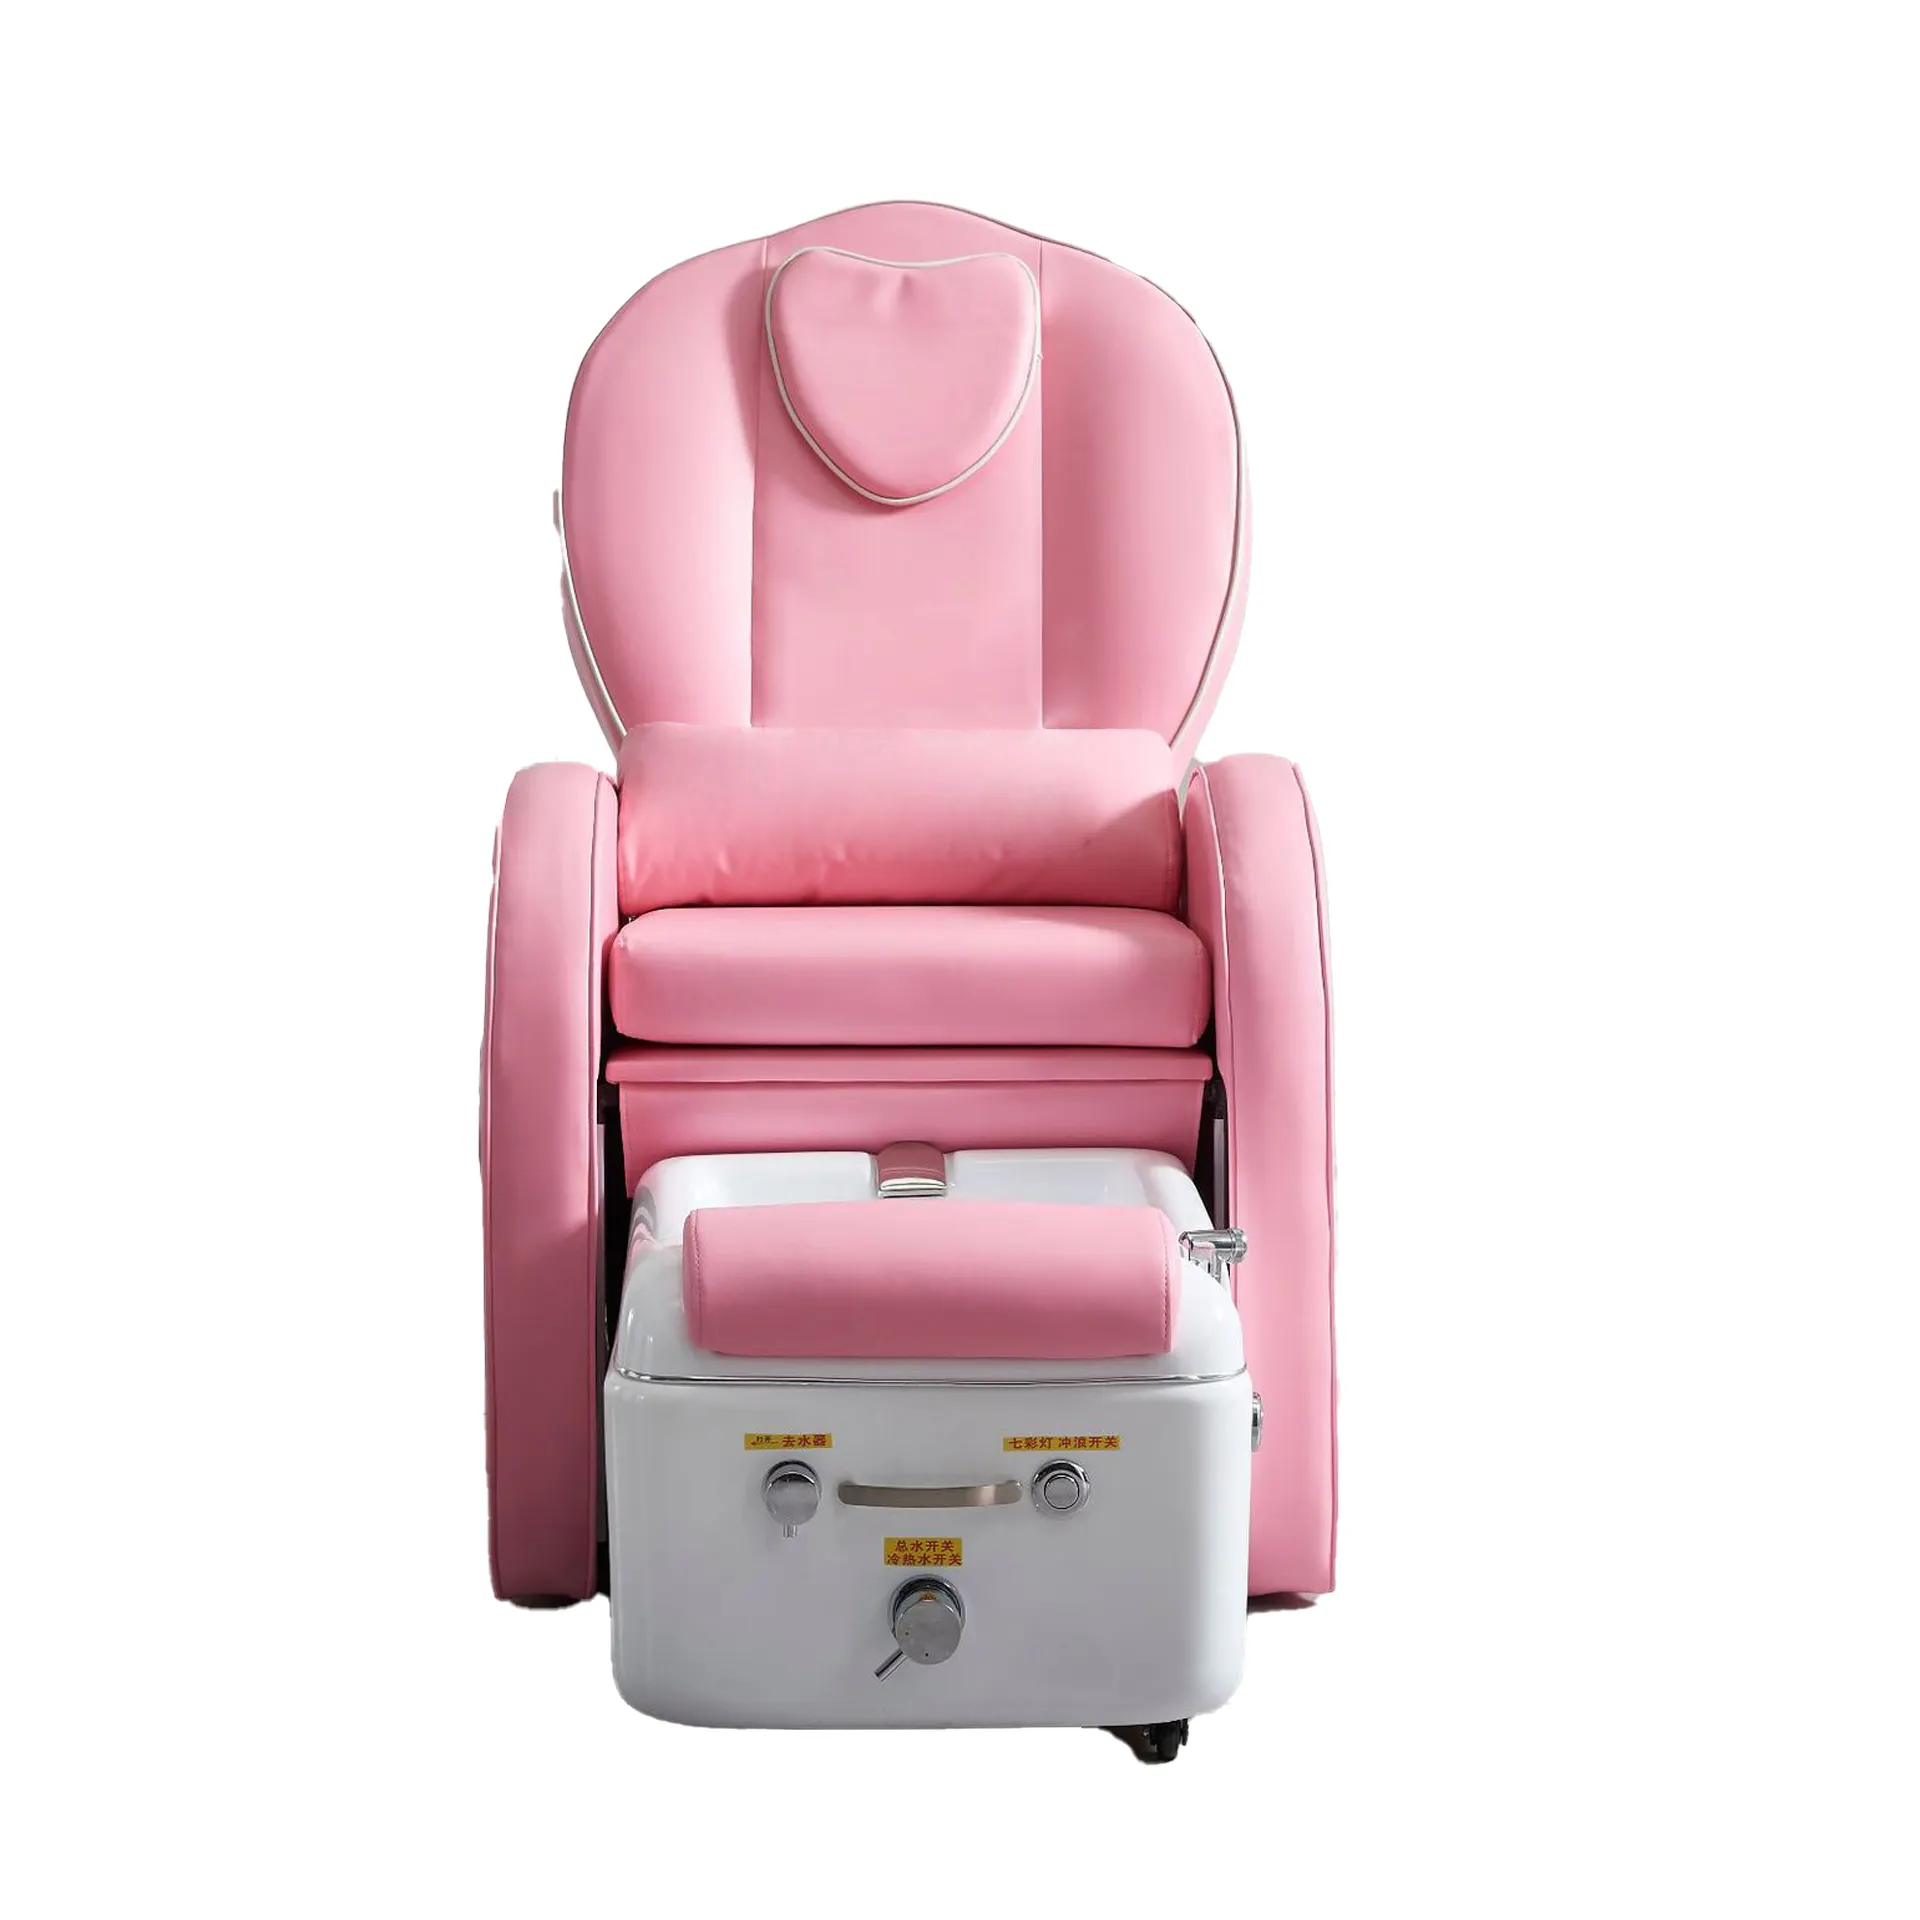 Hot vender pé banho massagem cadeira jato bico footbath cadeira elétrica spa beleza tratamento cadeira cama